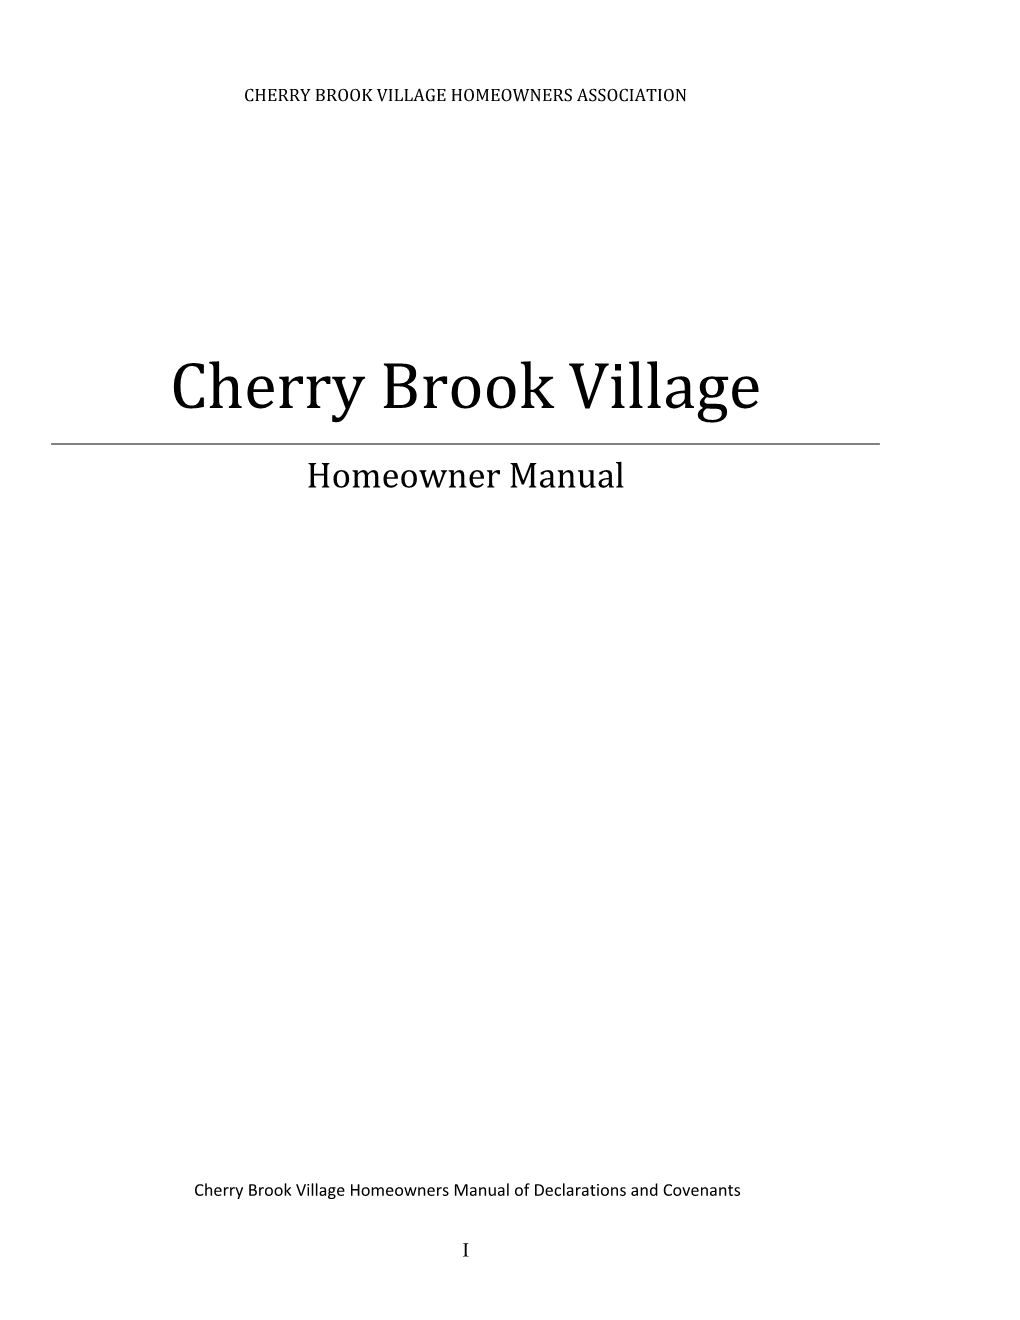 Cherry Brook Village